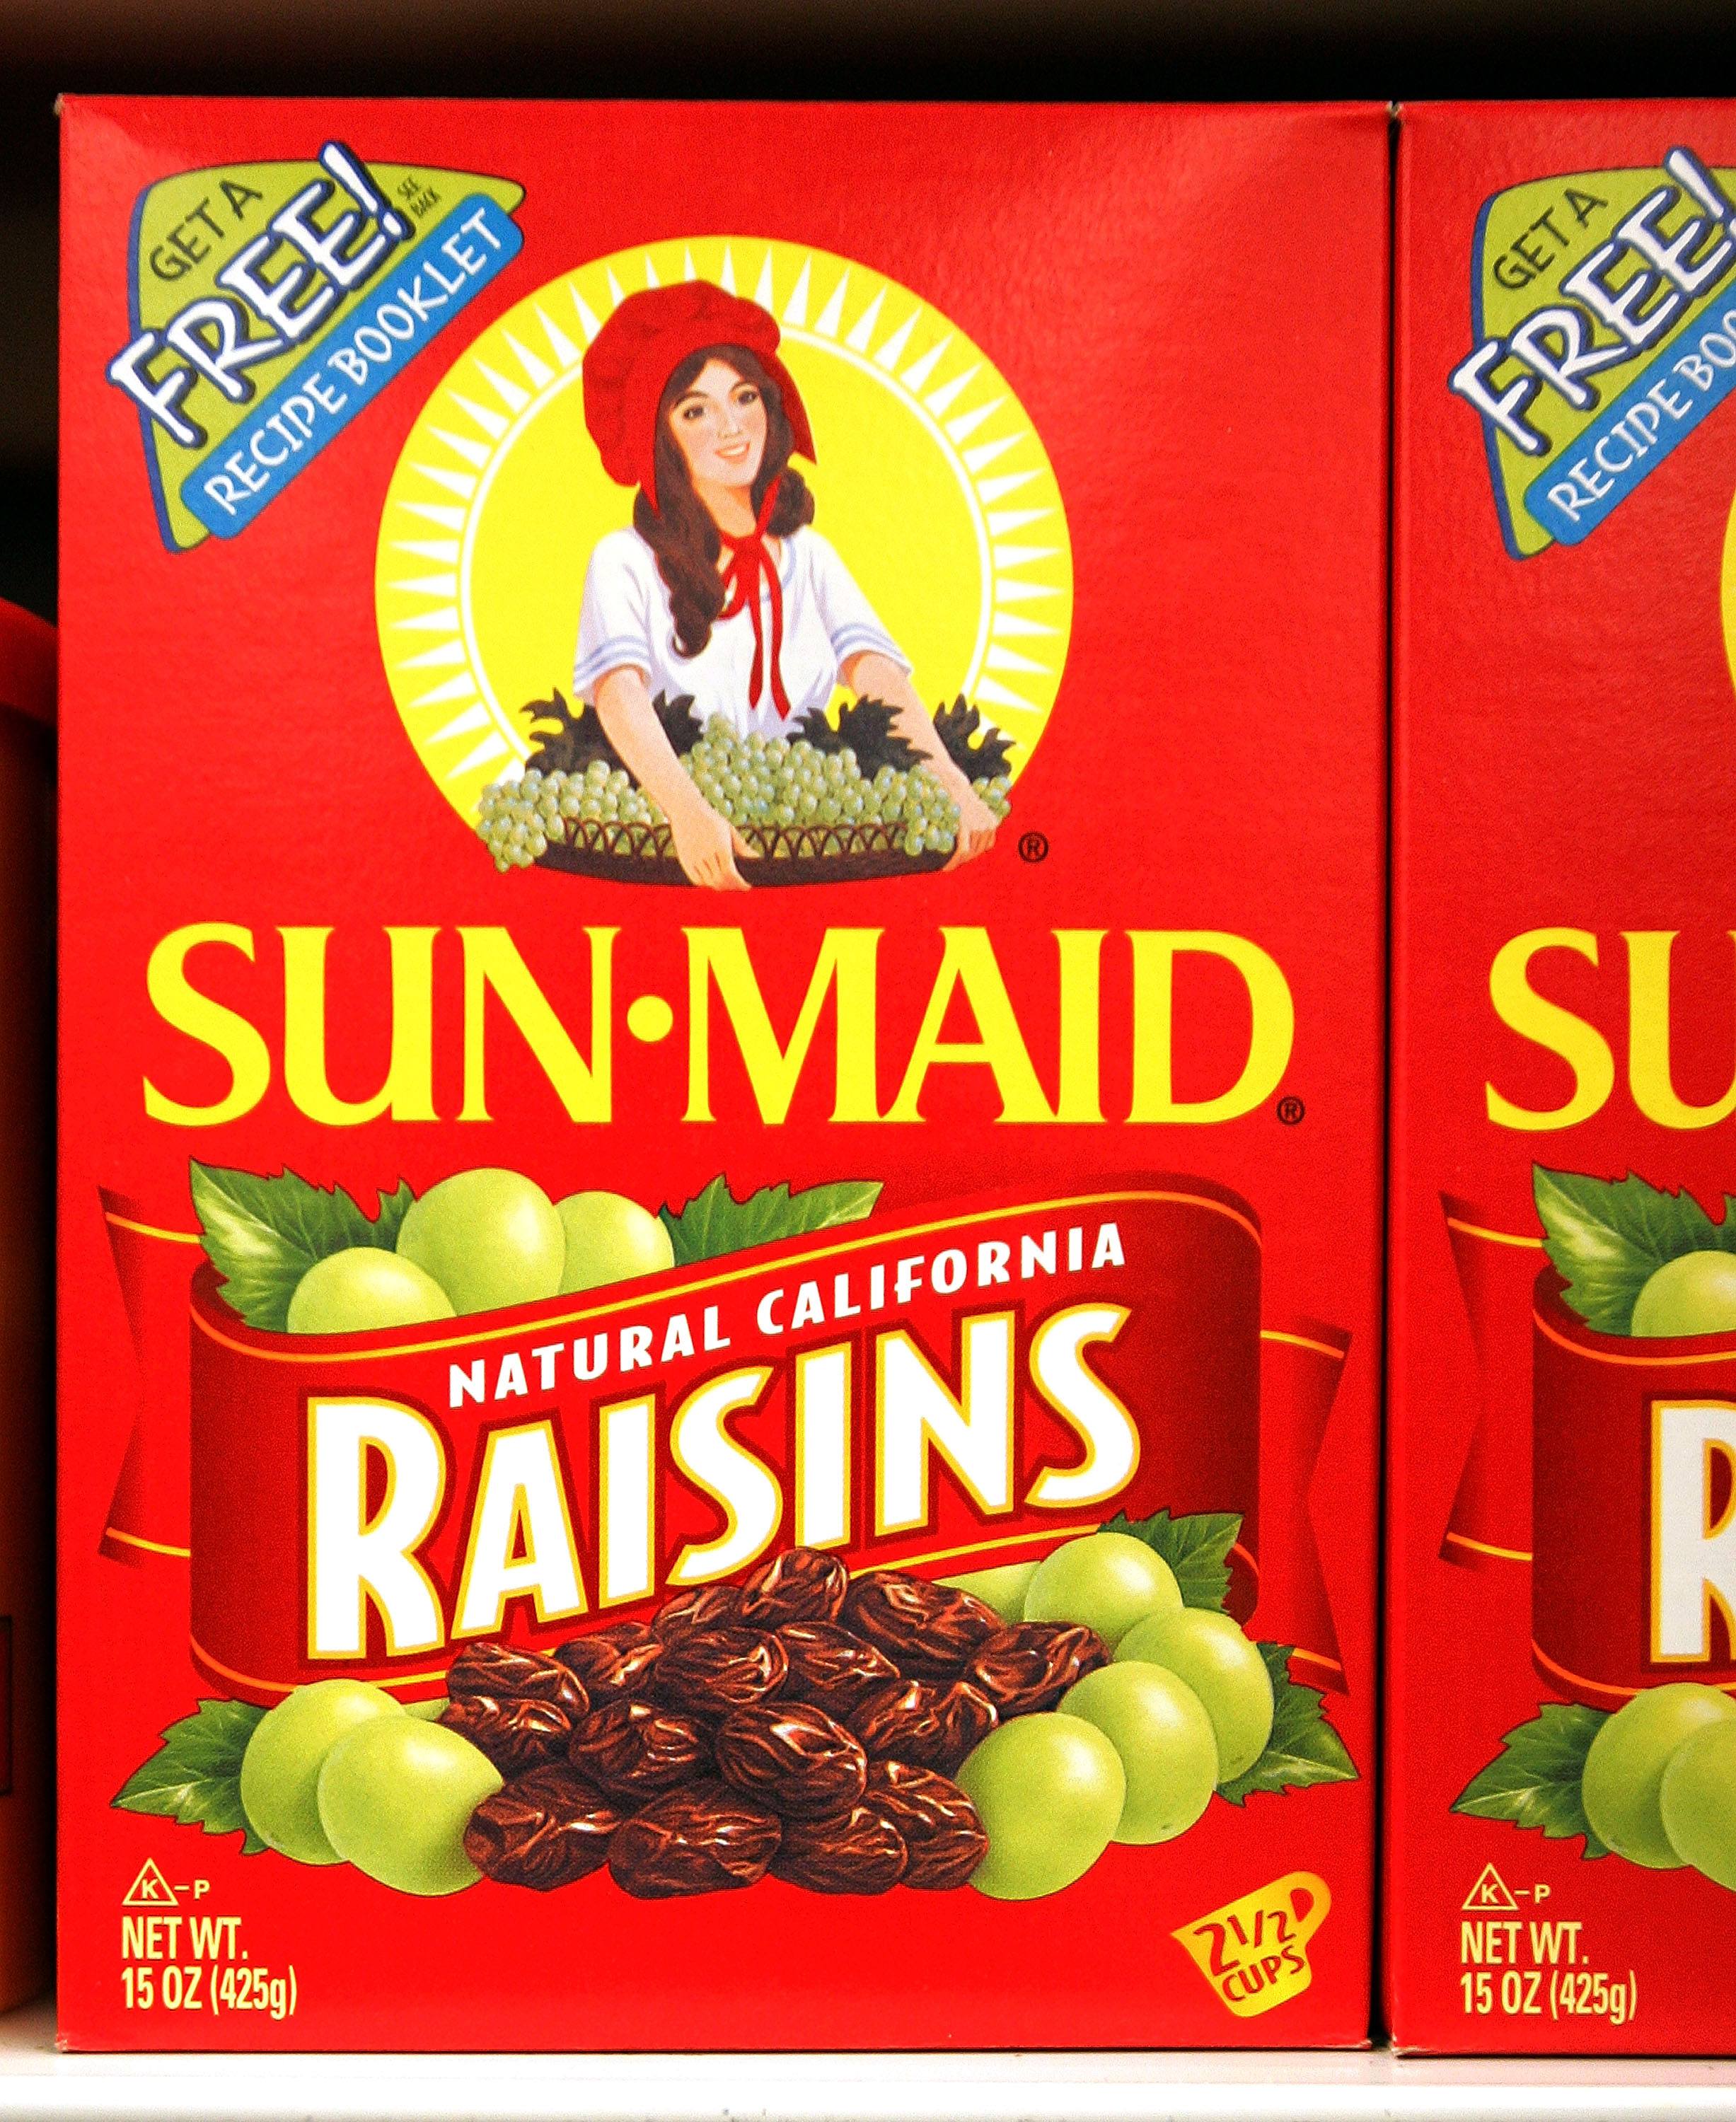 Box of Raisins